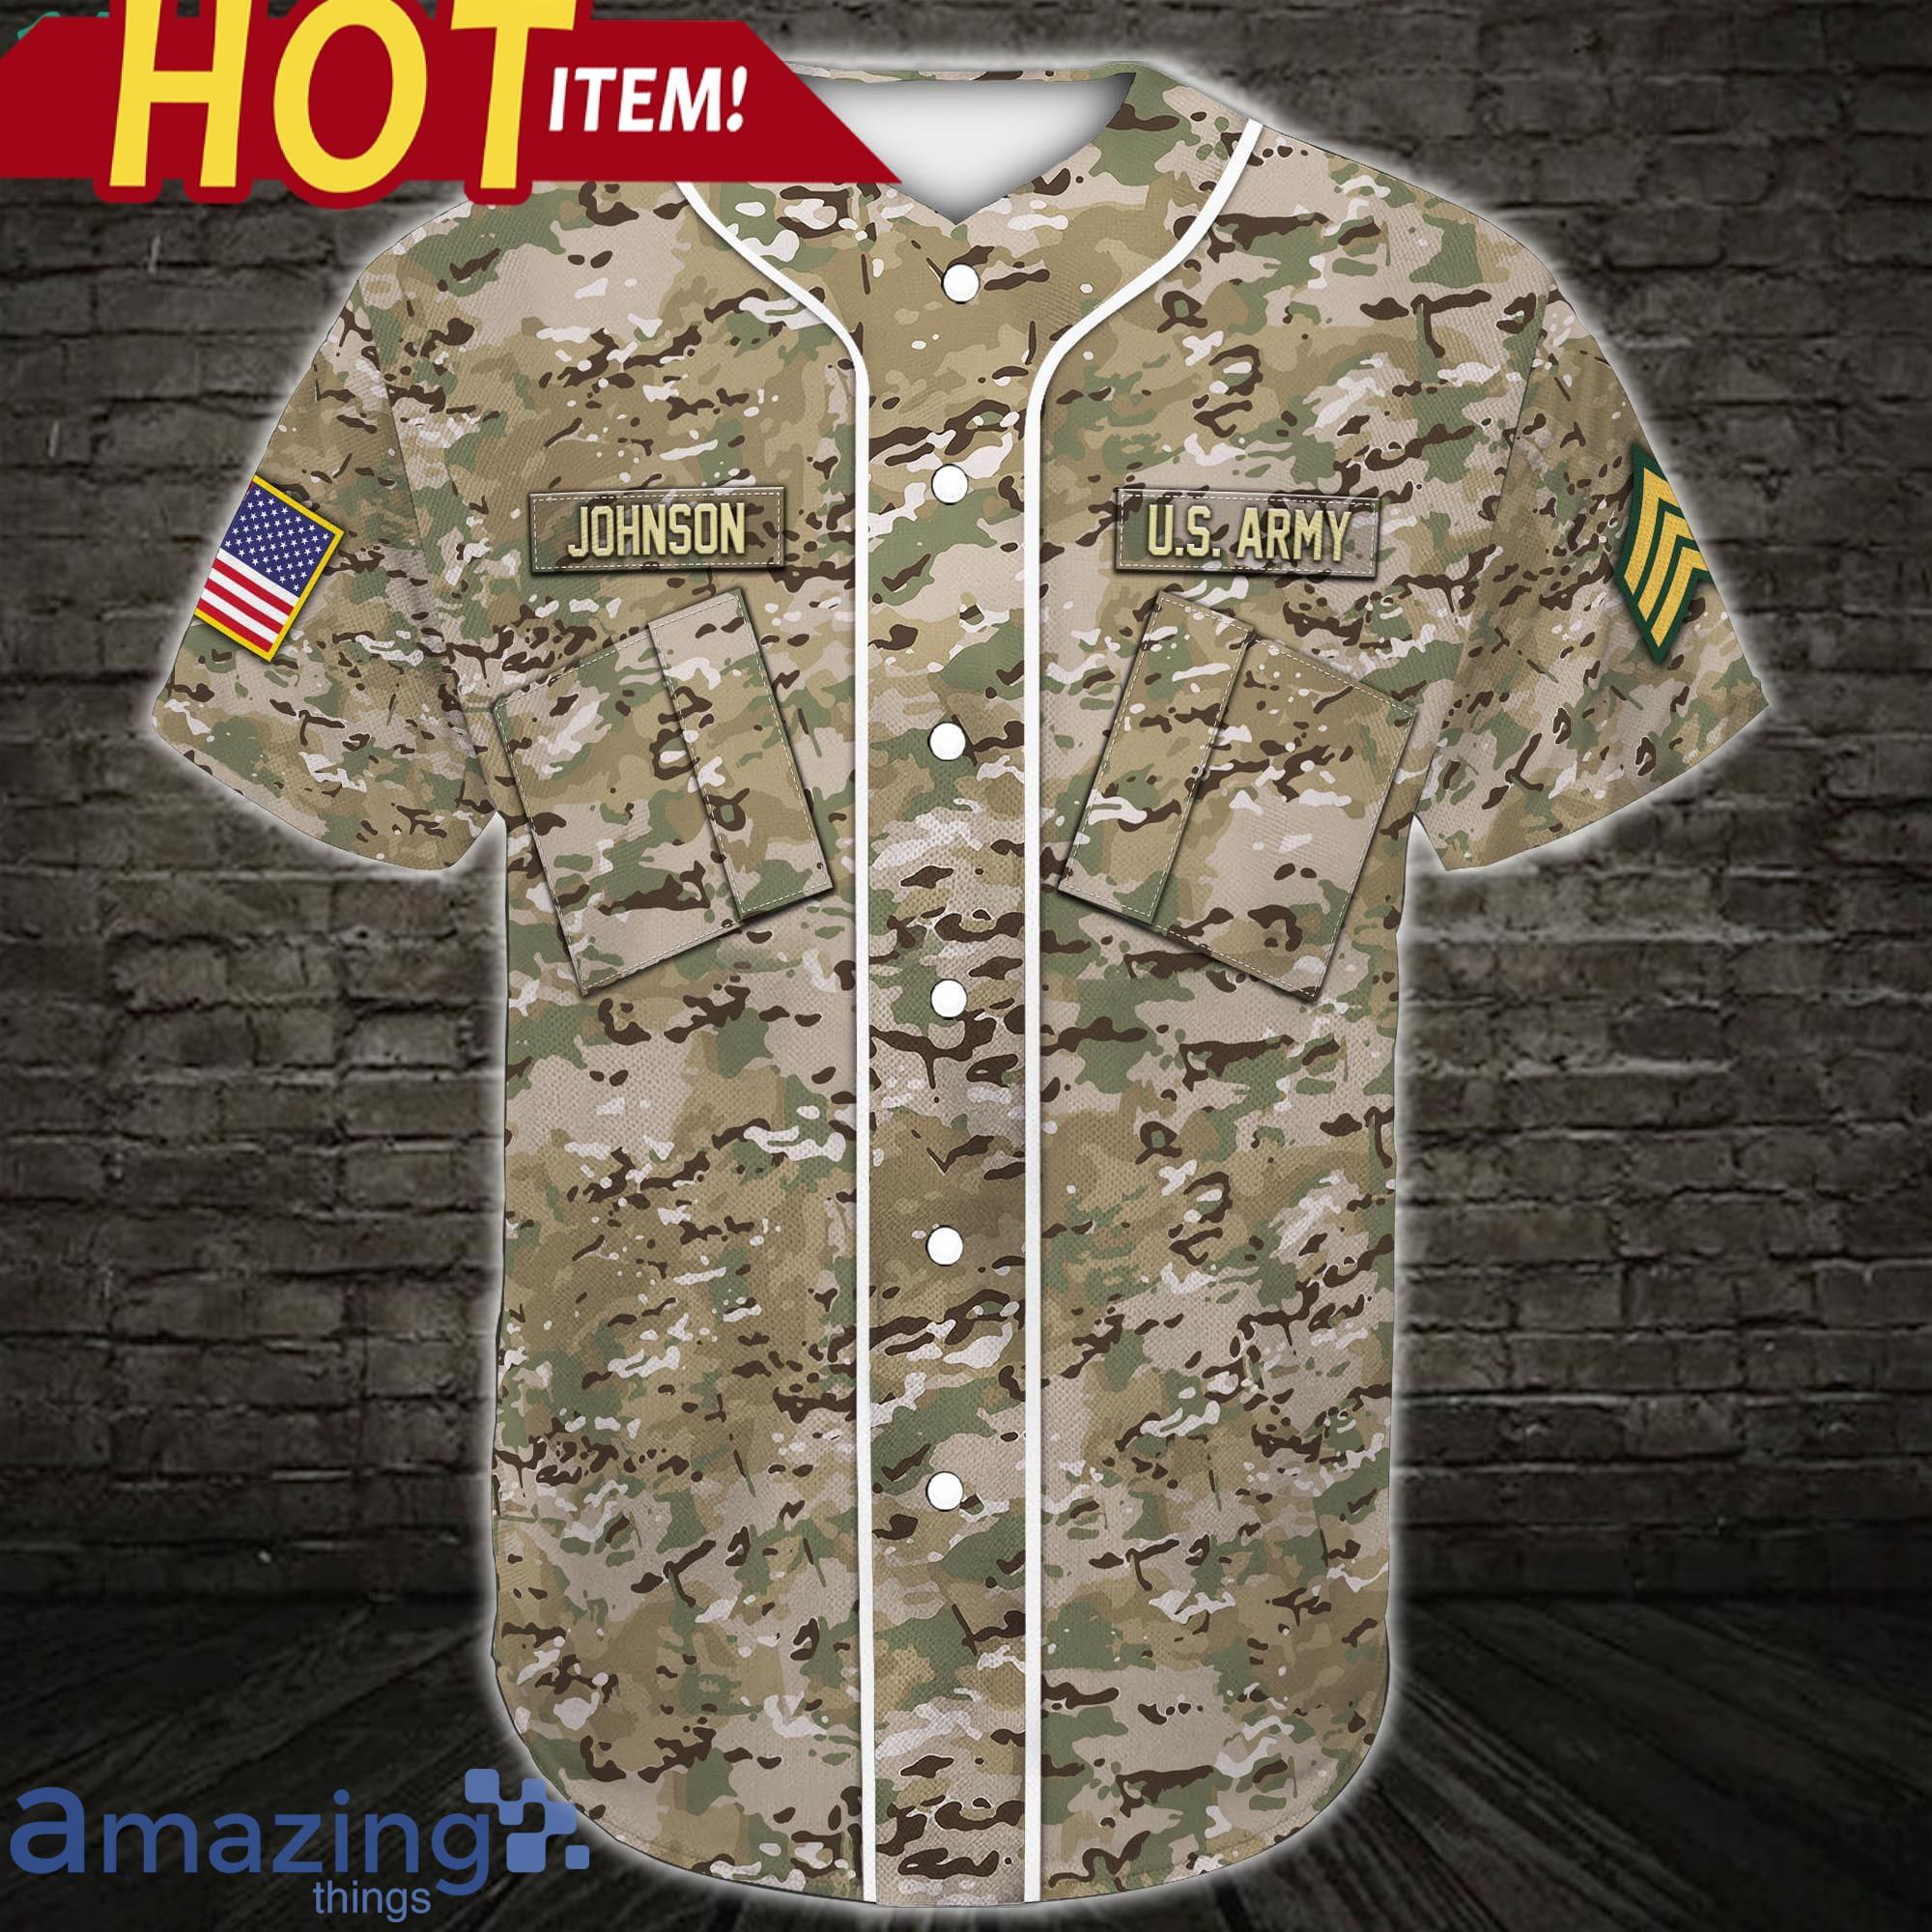 military baseball jersey